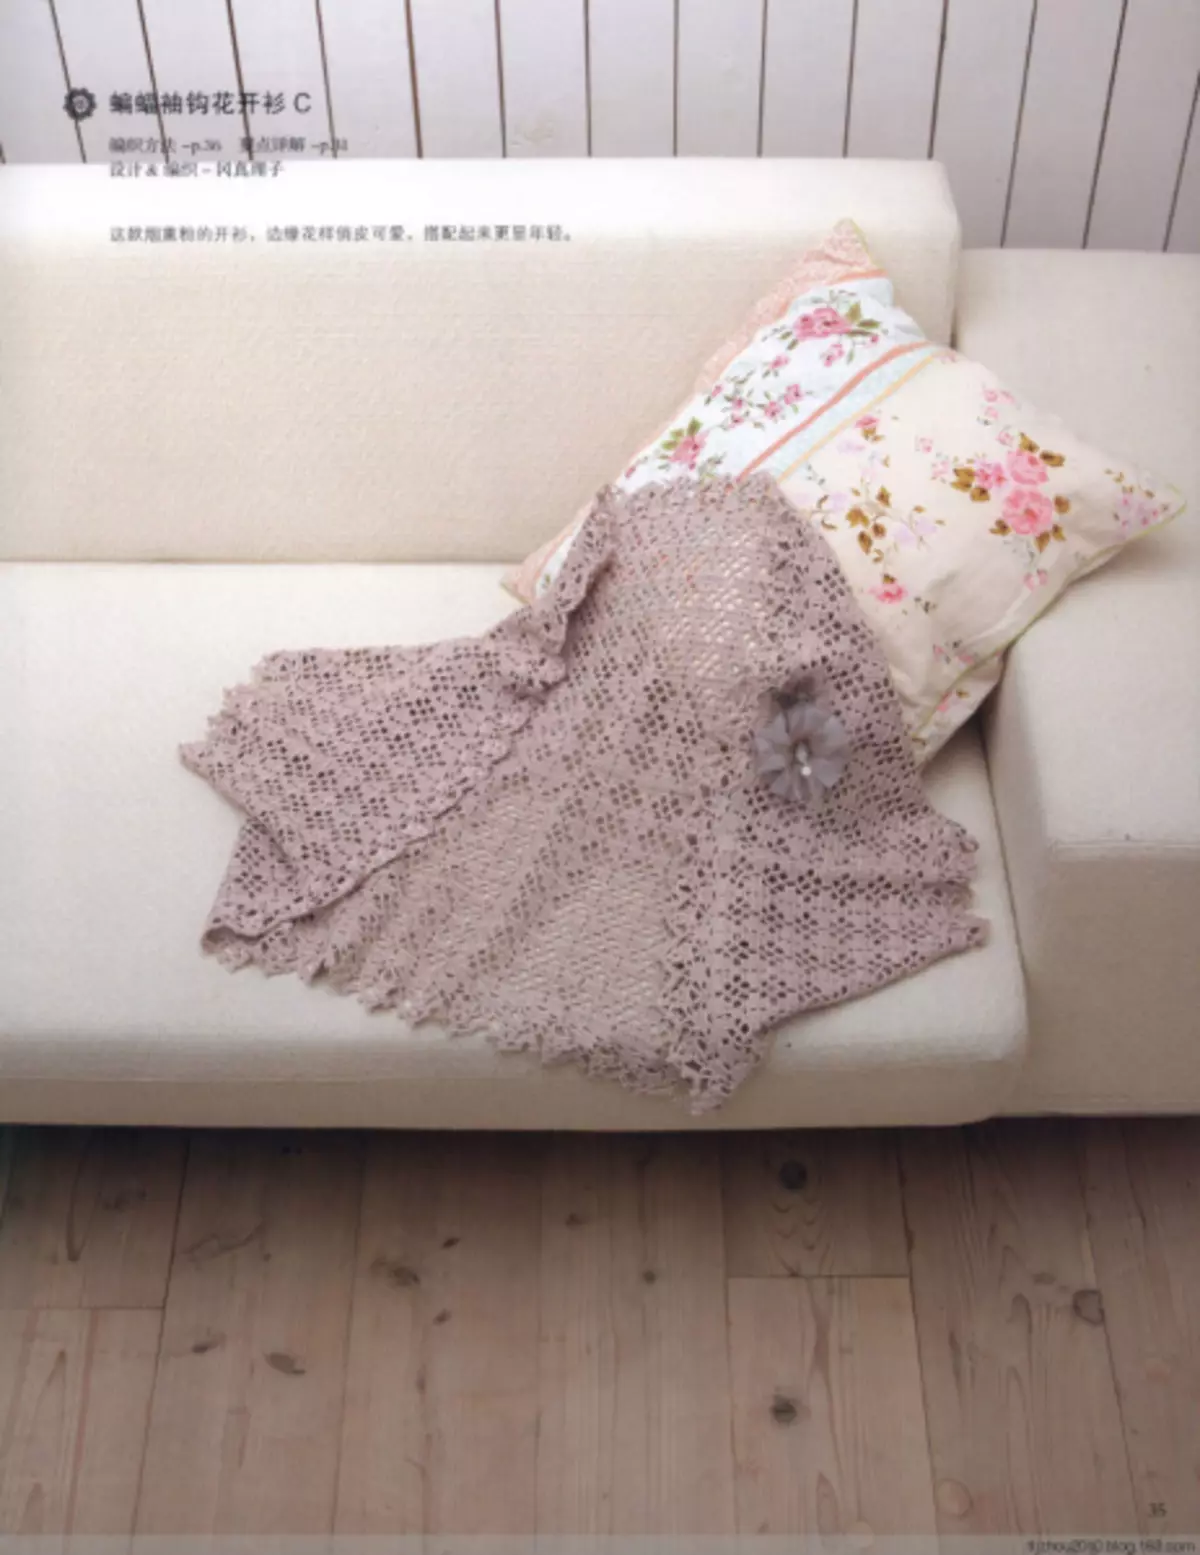 Boleral, shawl sareng crochet tanjung